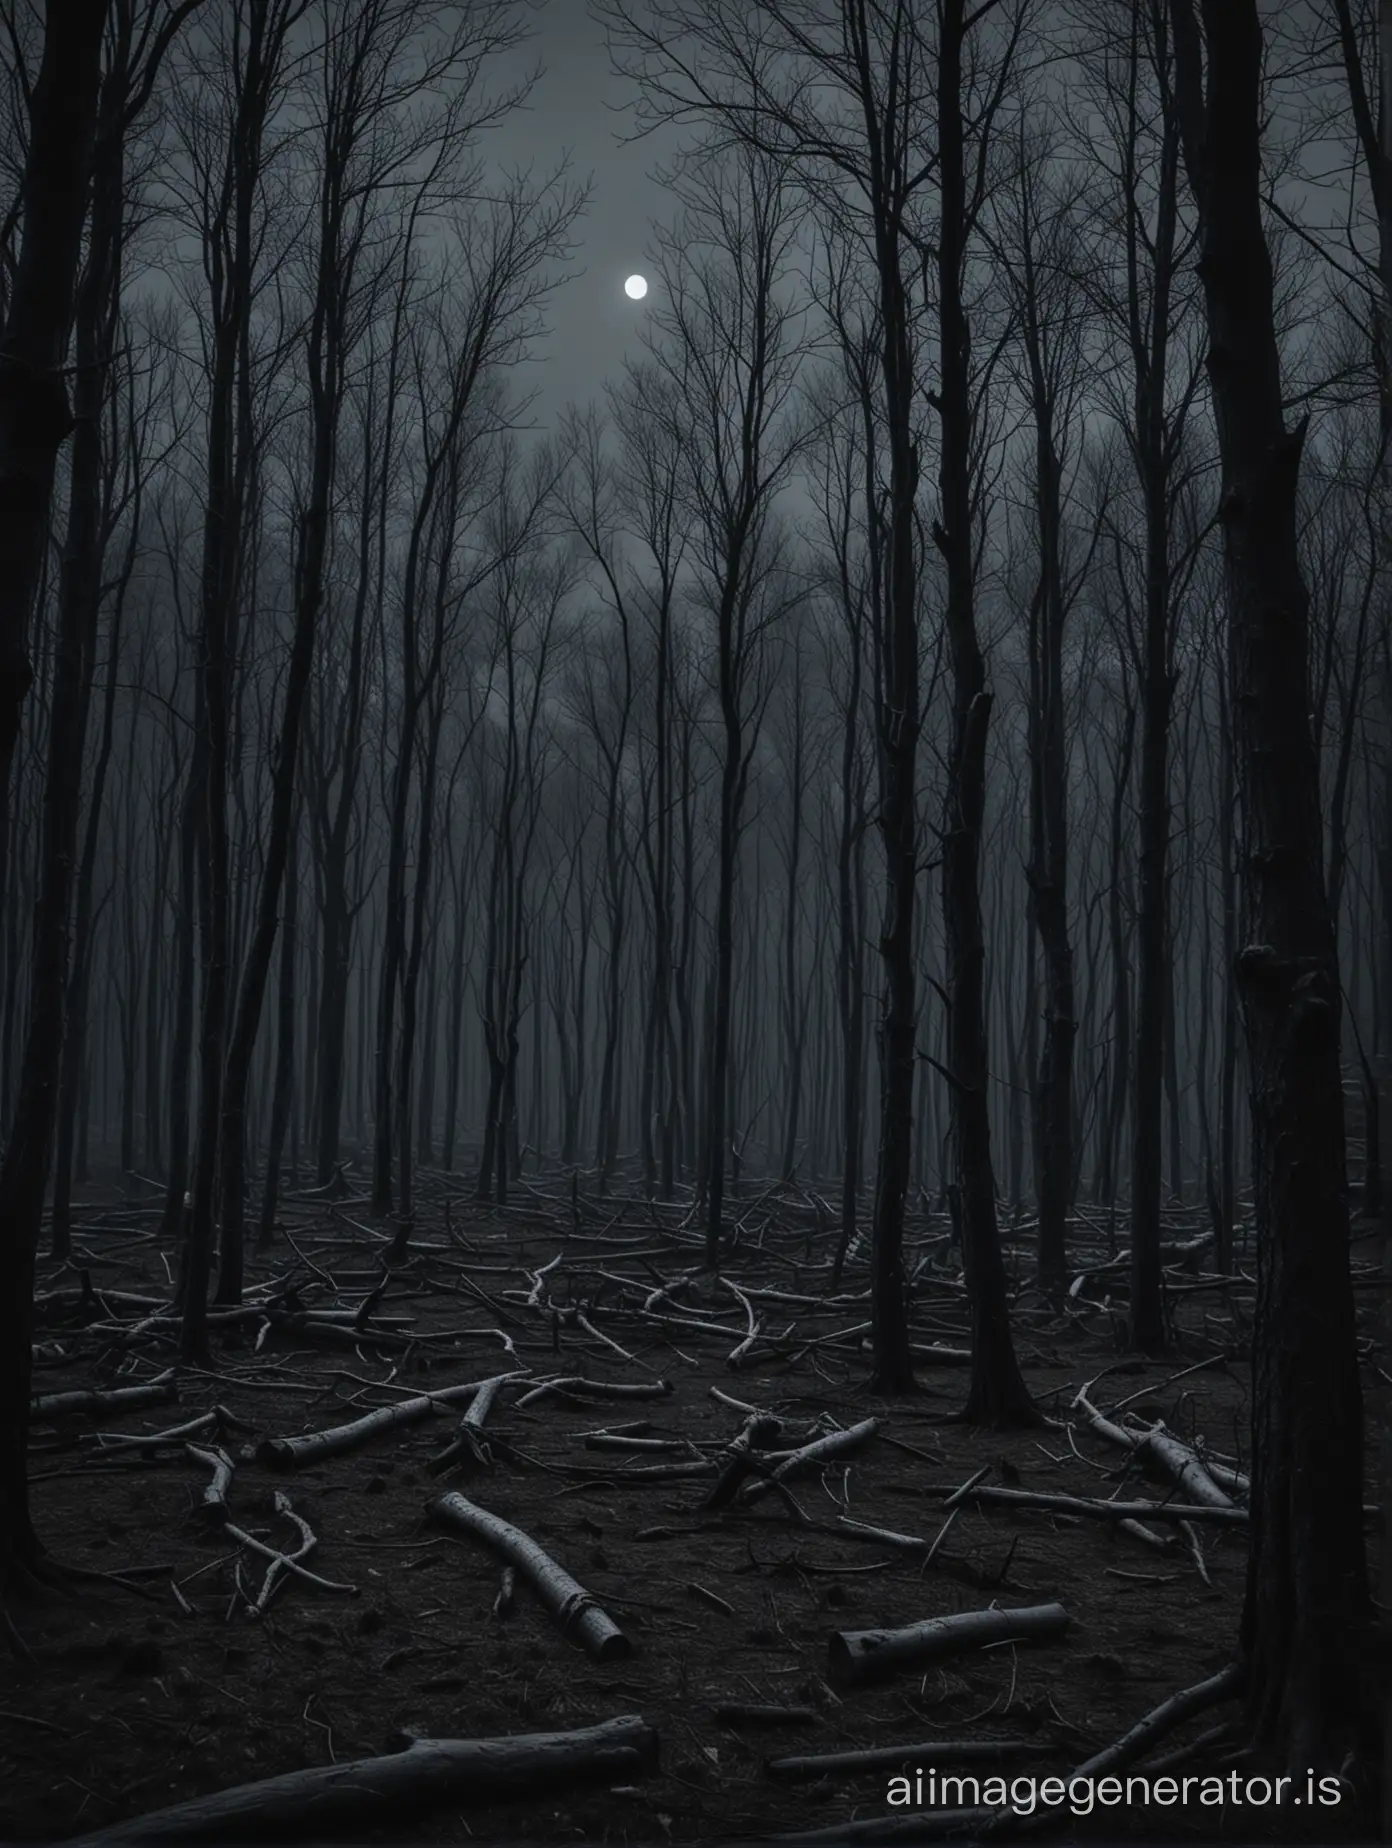 Ein dunkles Bild, mit einem dunklen Wald voll von abgestorbenen Bäumen. Es ist nacht und sehr dunkel. Es ist nur schwer etwas zu erkennen

